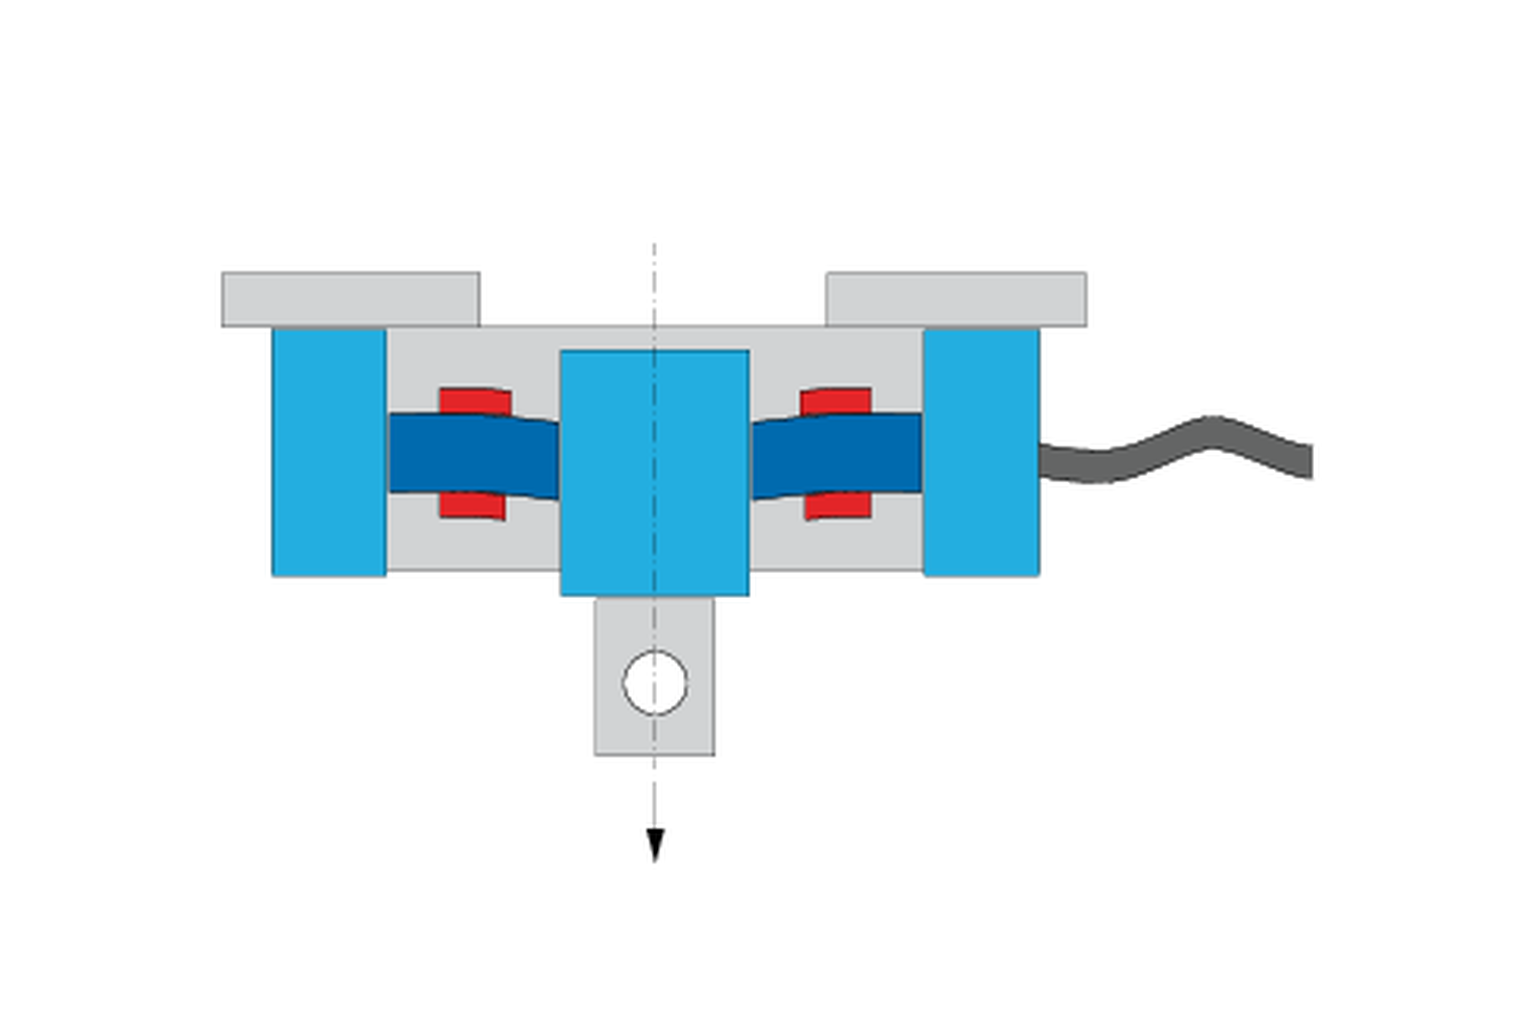 로드 셀 작동 원리 연장 및 압축한 상태의 변형계가 있는 로드 셀 그림